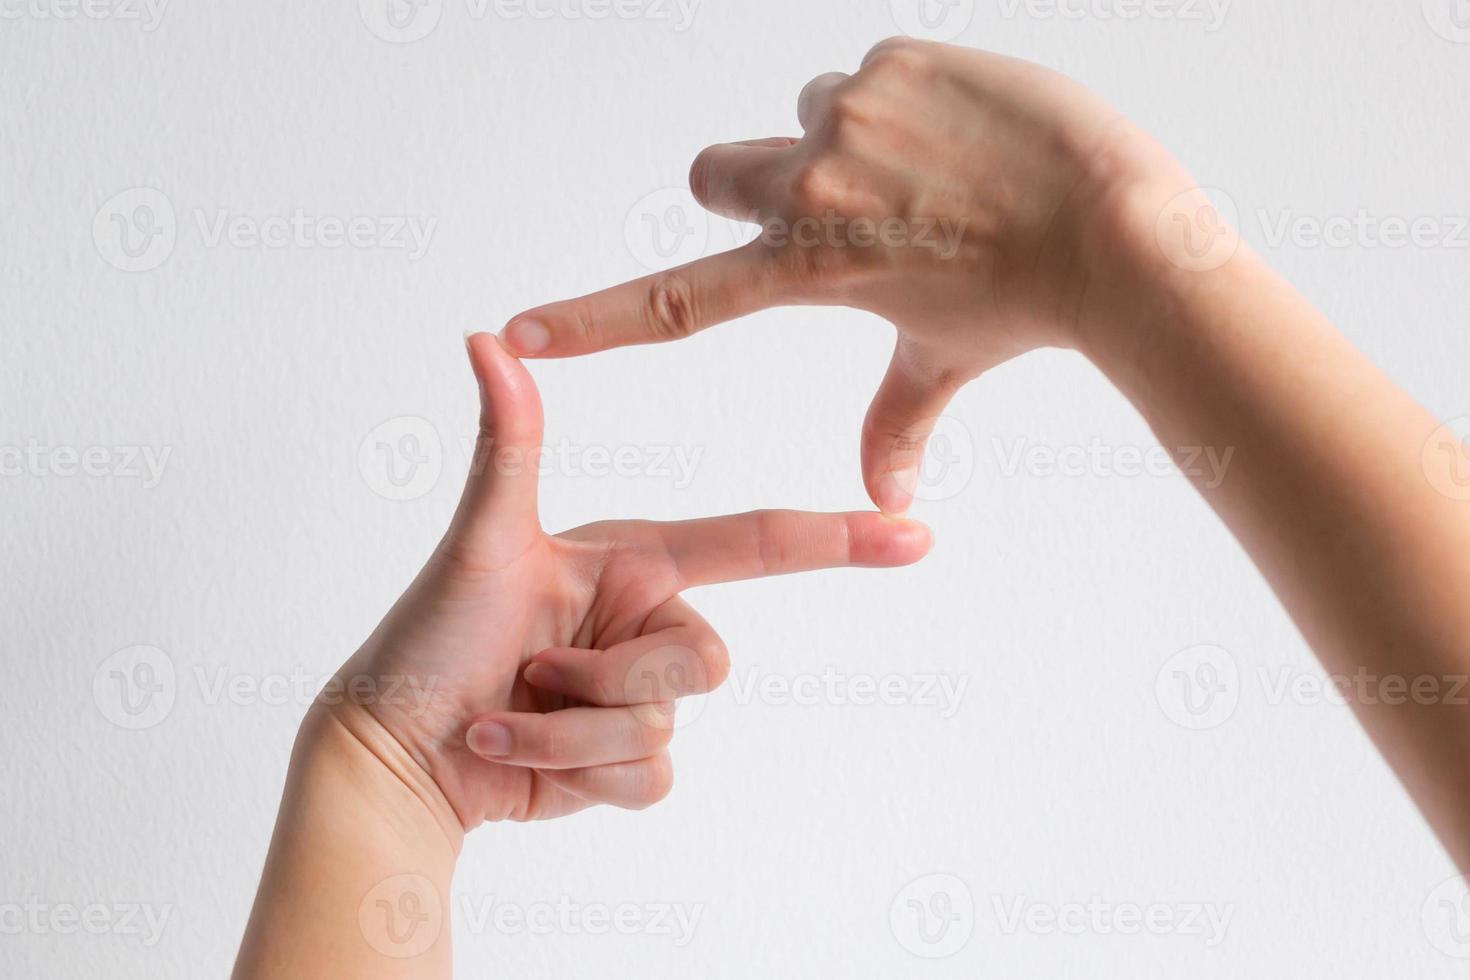 símbolo do quadro da câmera usando o polegar e o dedo indicador das duas mãos. foto